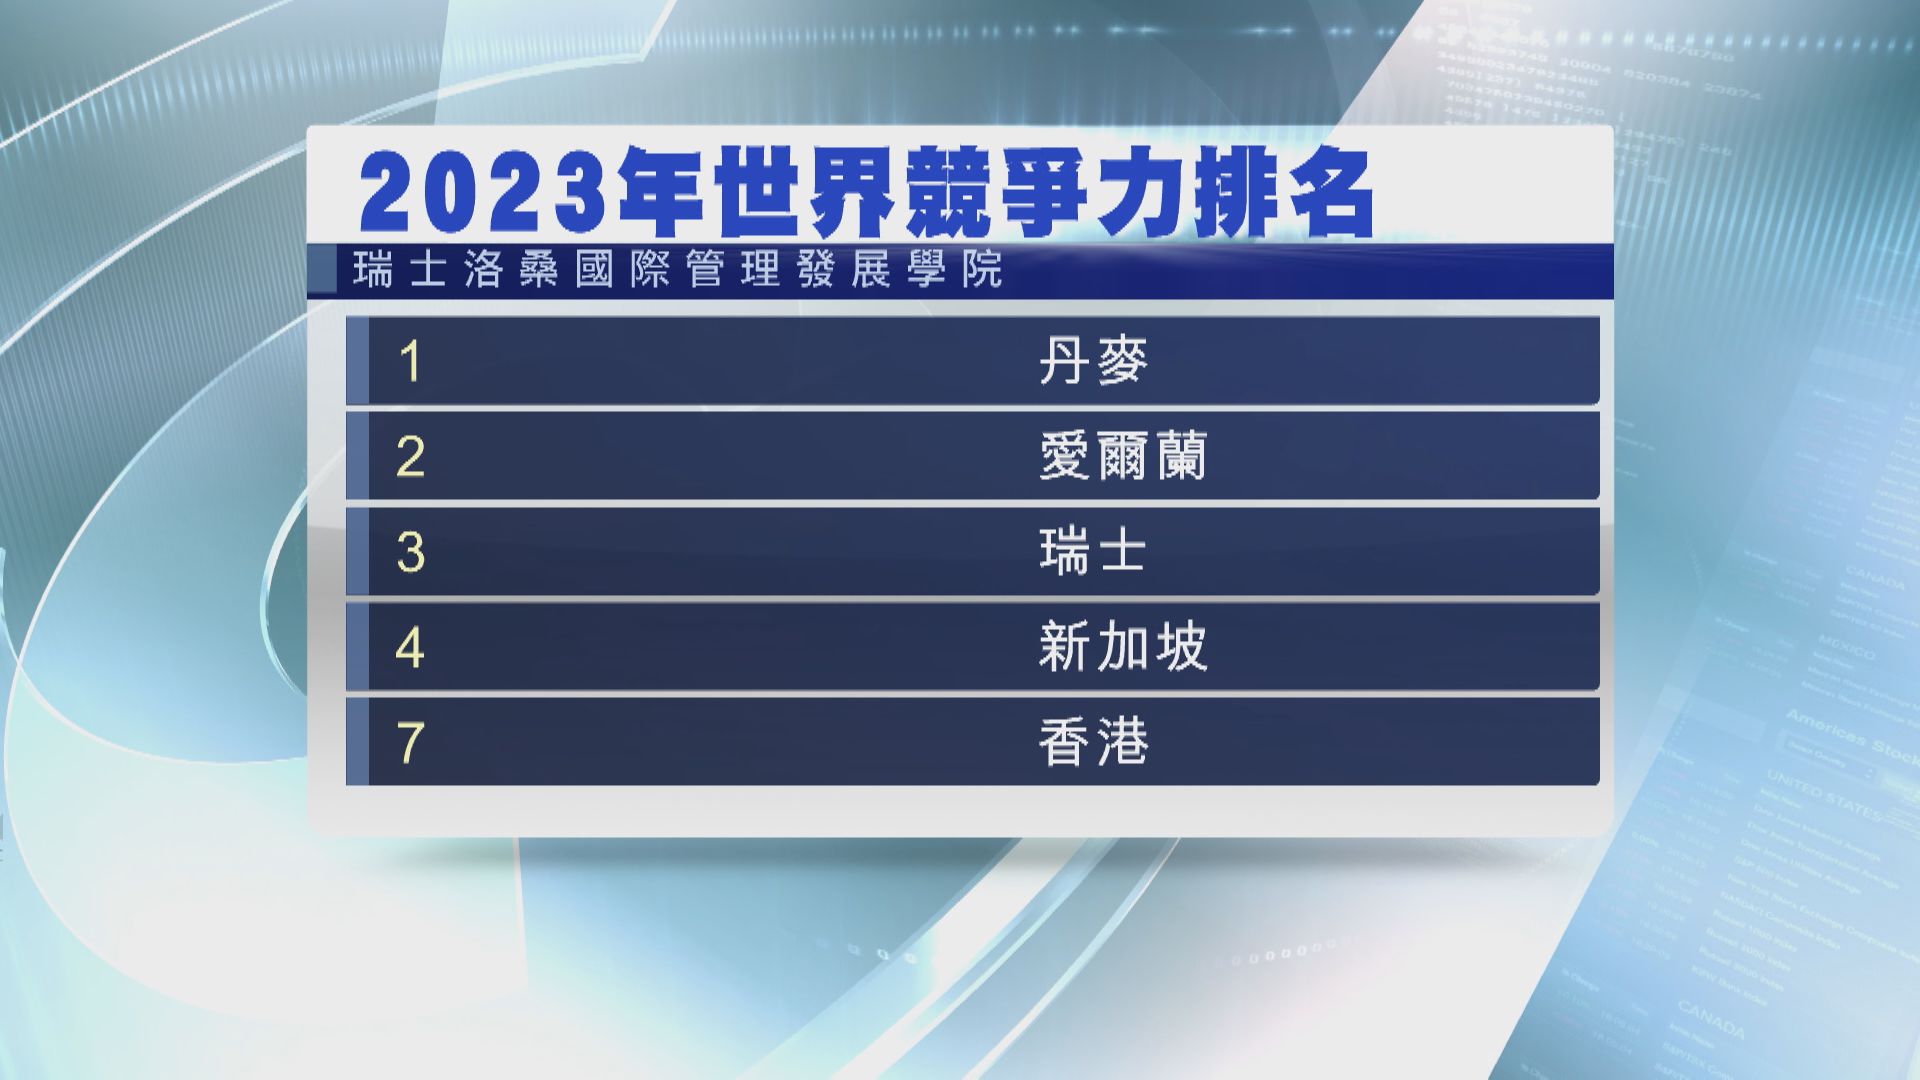 【IMD年報】香港競爭力全球第7 下跌兩級